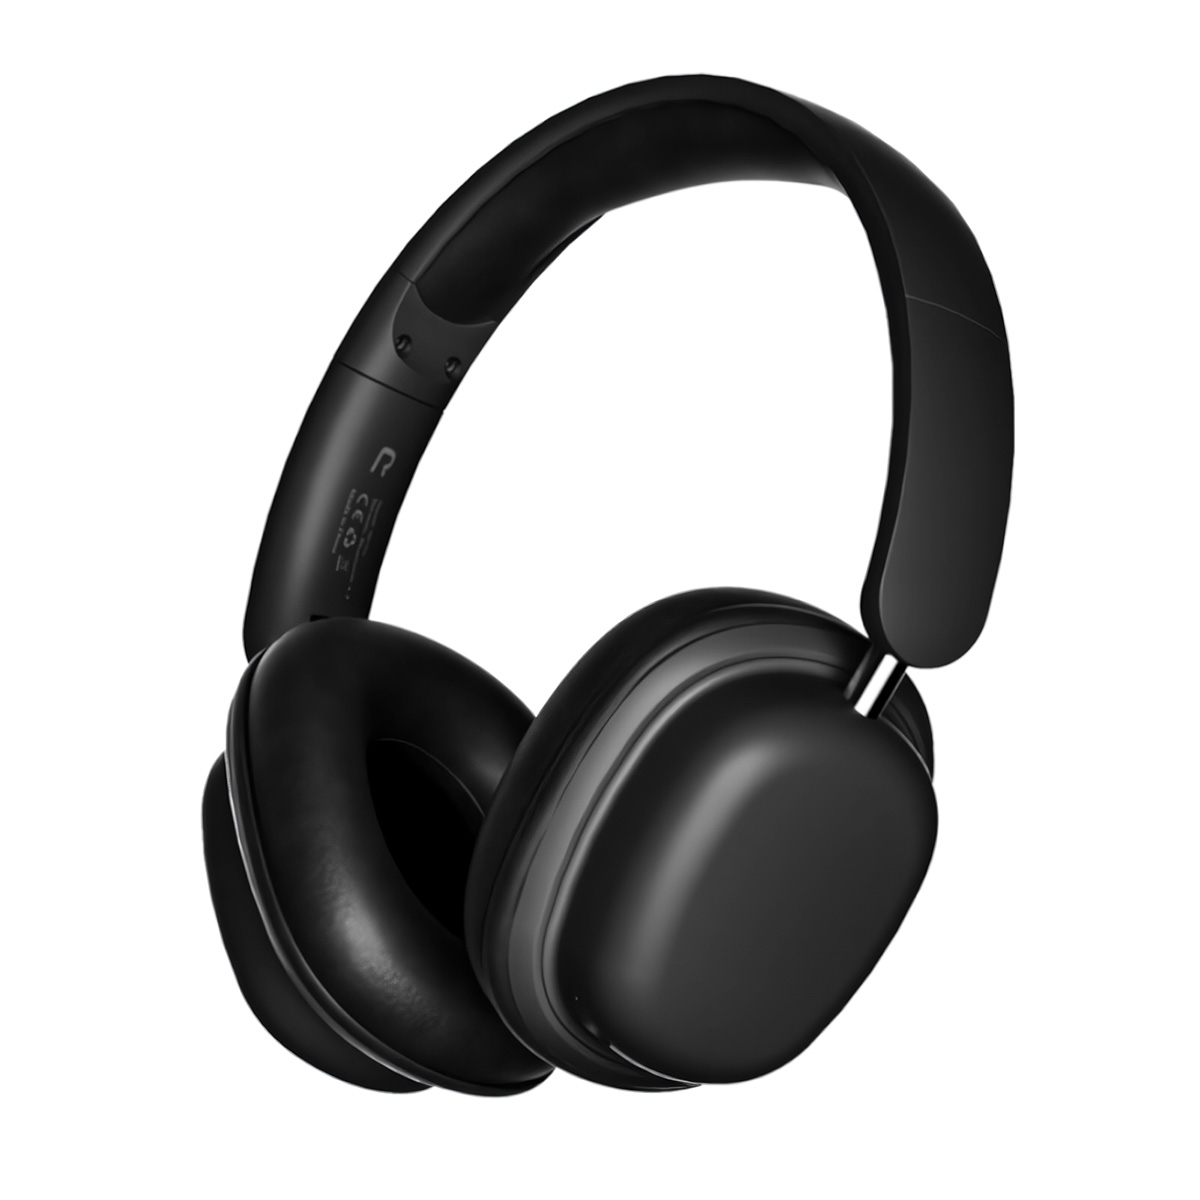 Auriculares Bluetooth Klack Sy-t1 Plegables Micrófono 20h De Autonomía - negro - 